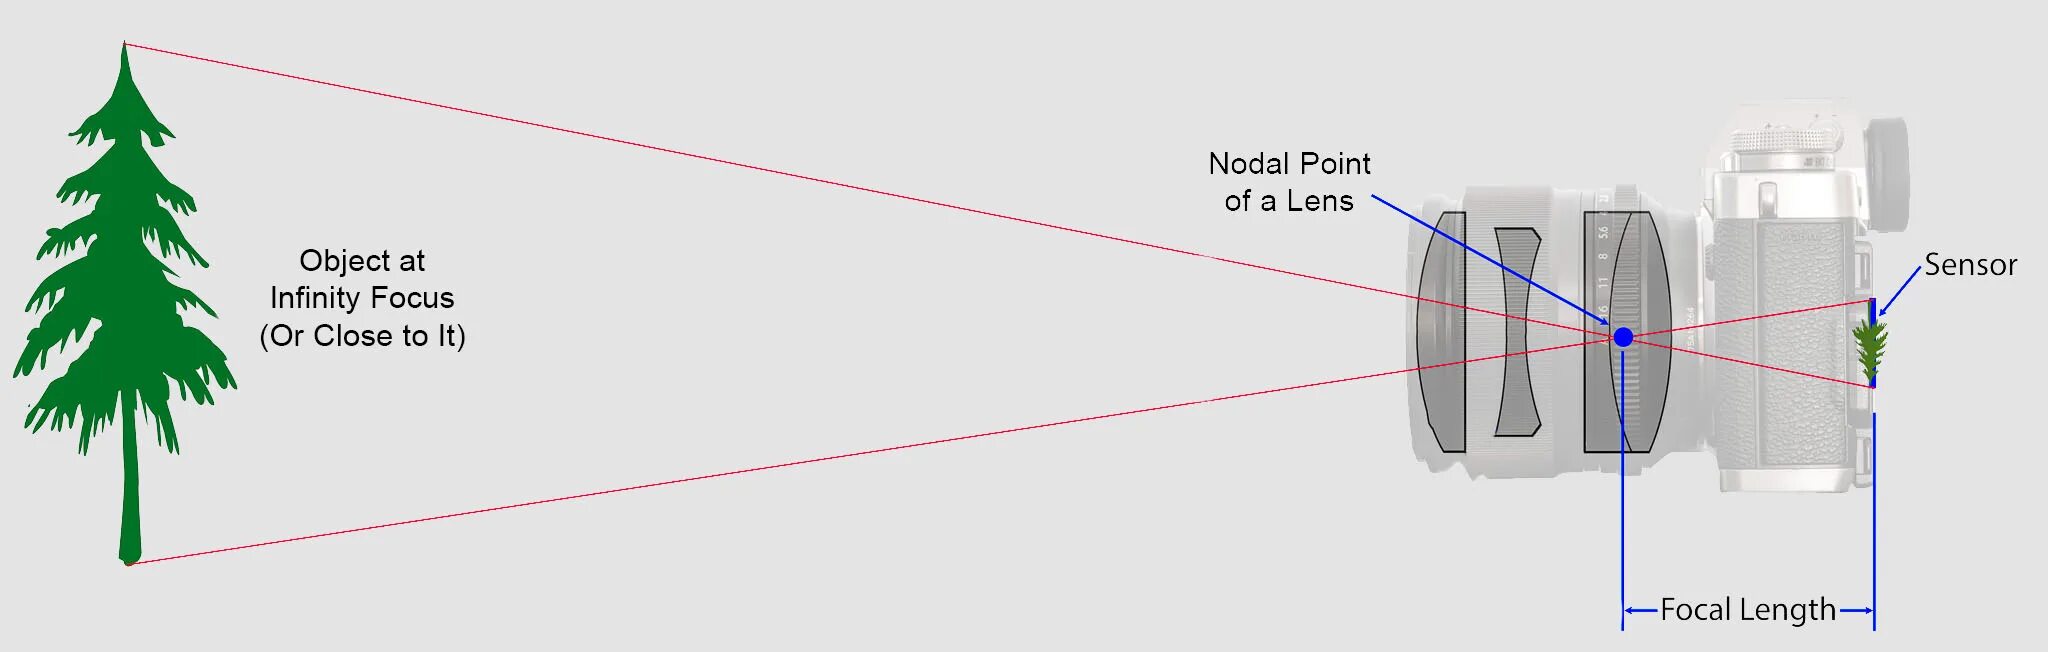 Lens Focal length. Оптическая схема длиннофокусного объектива. Camera Focal length. Фокусное расстояние объектива. Object length